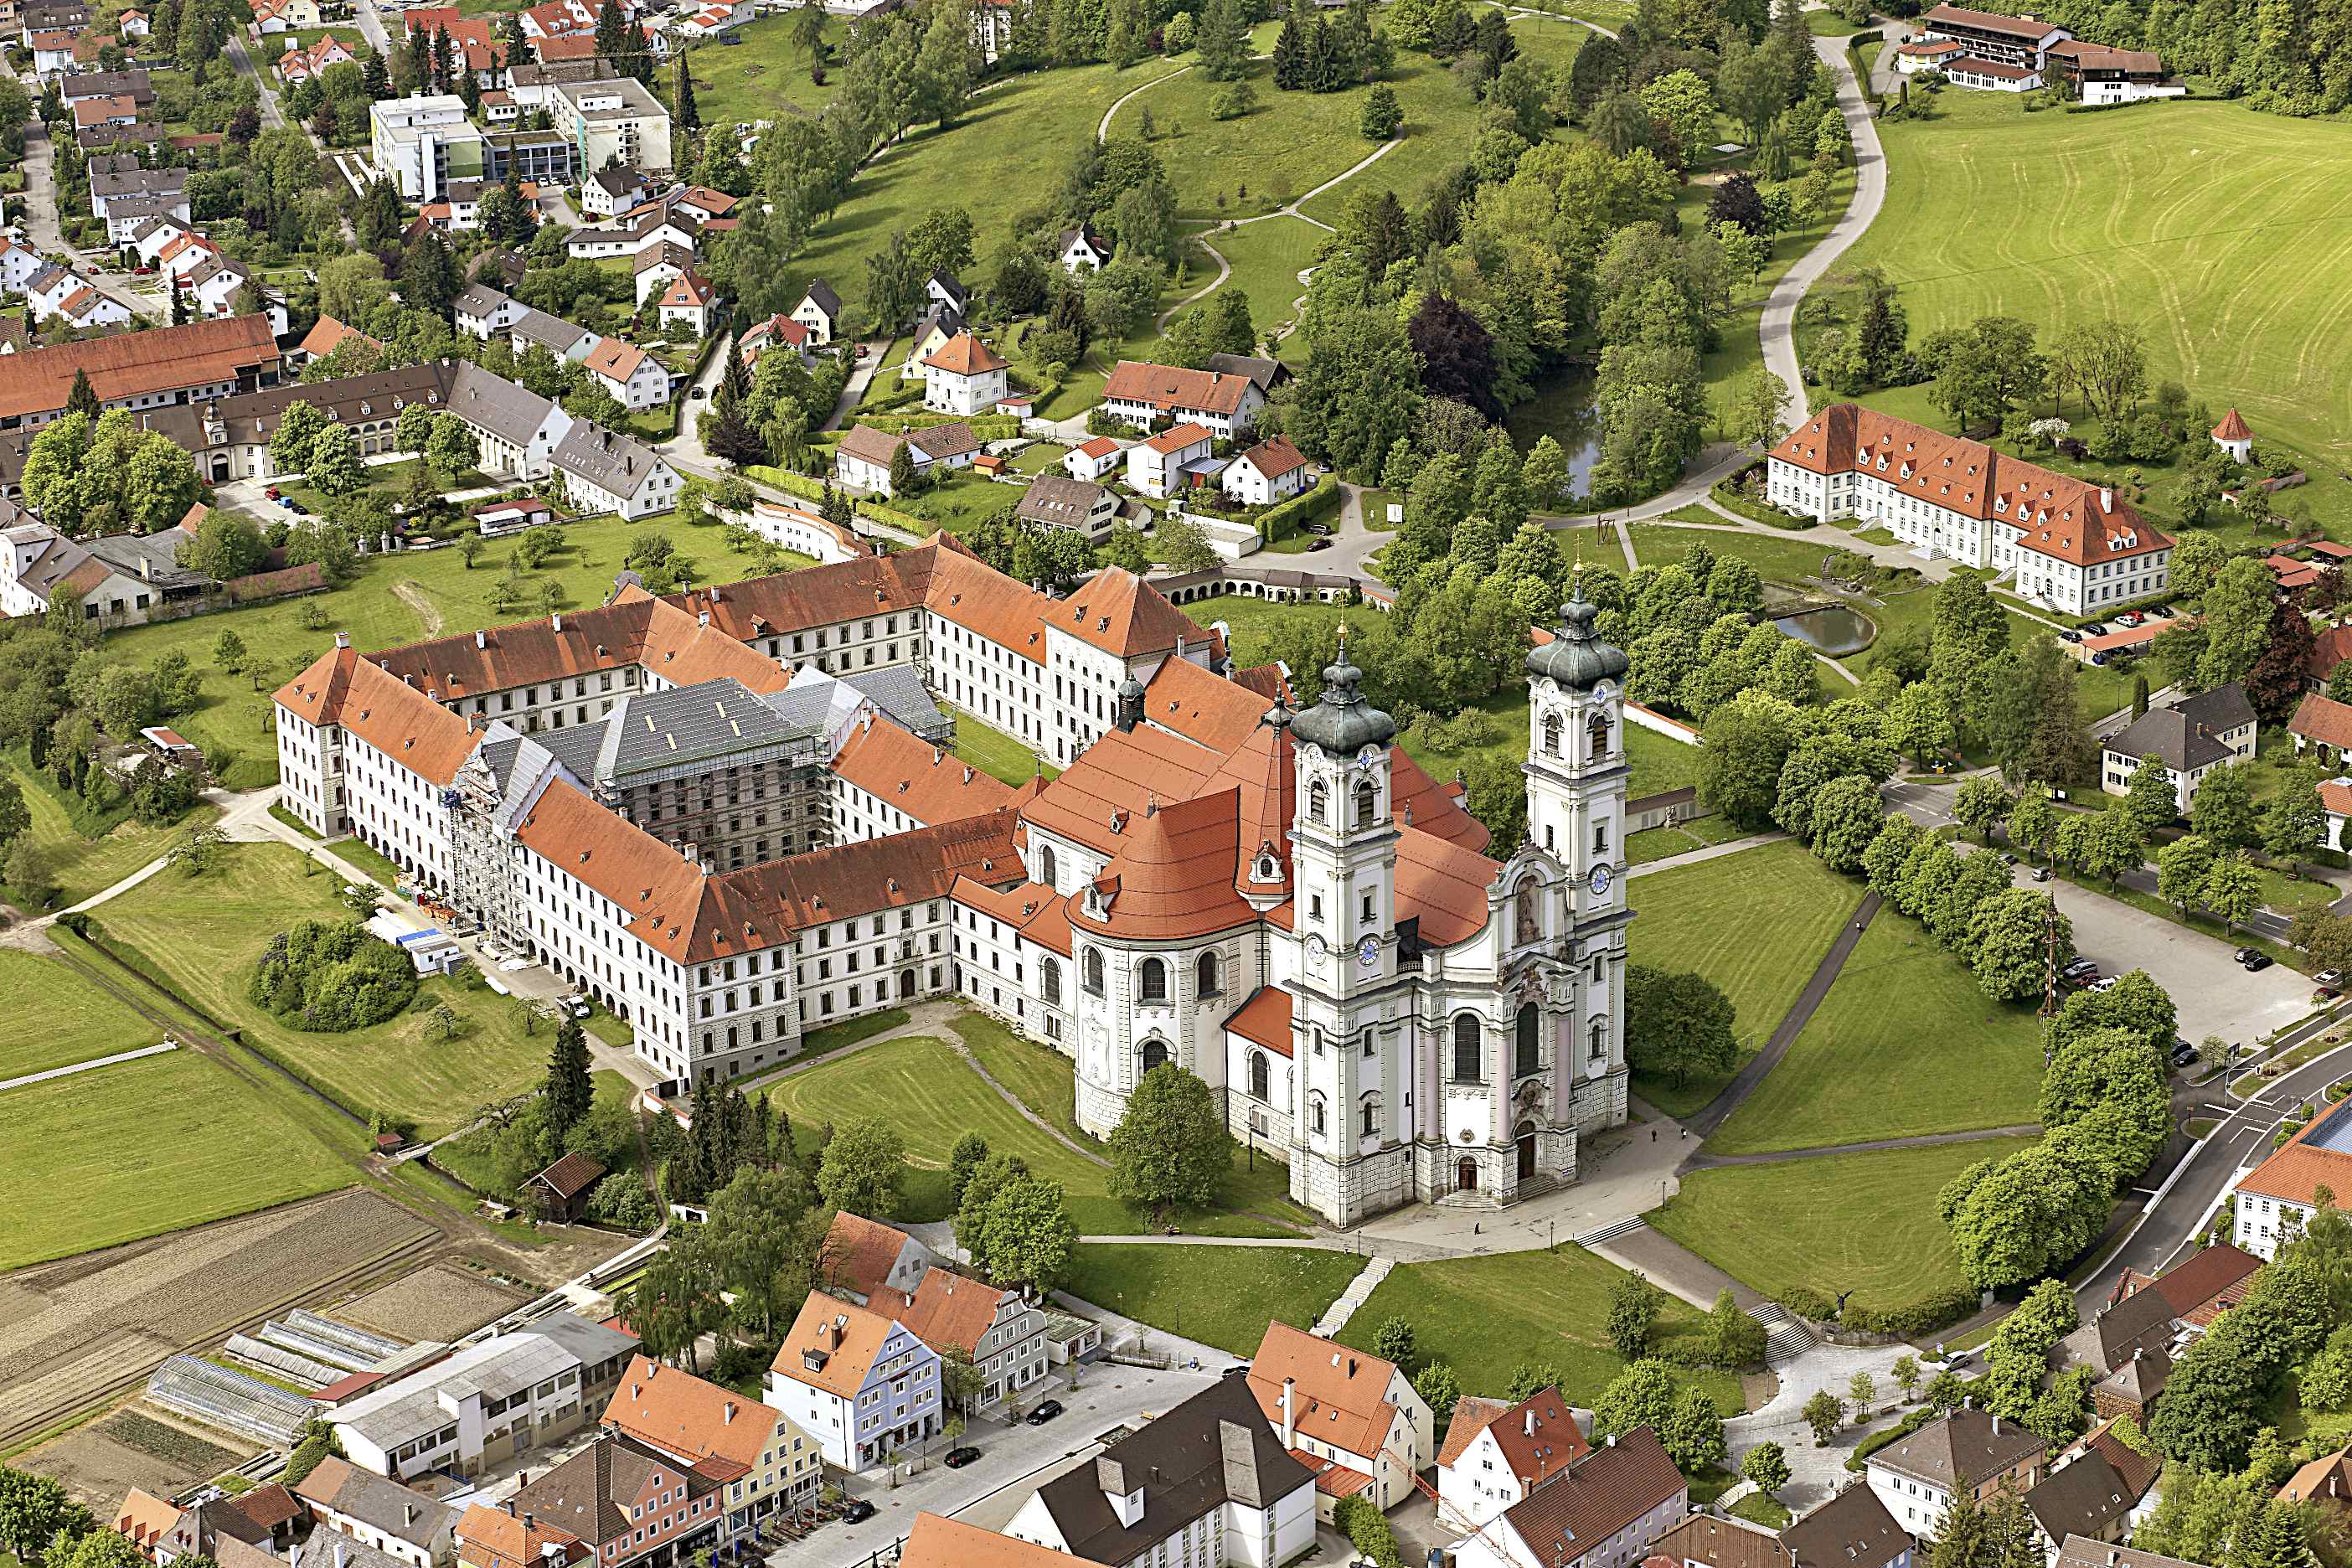 Luftbild der Marktgemeinde Ottobeuren und seiner komplexen Benediktinerabtei.
